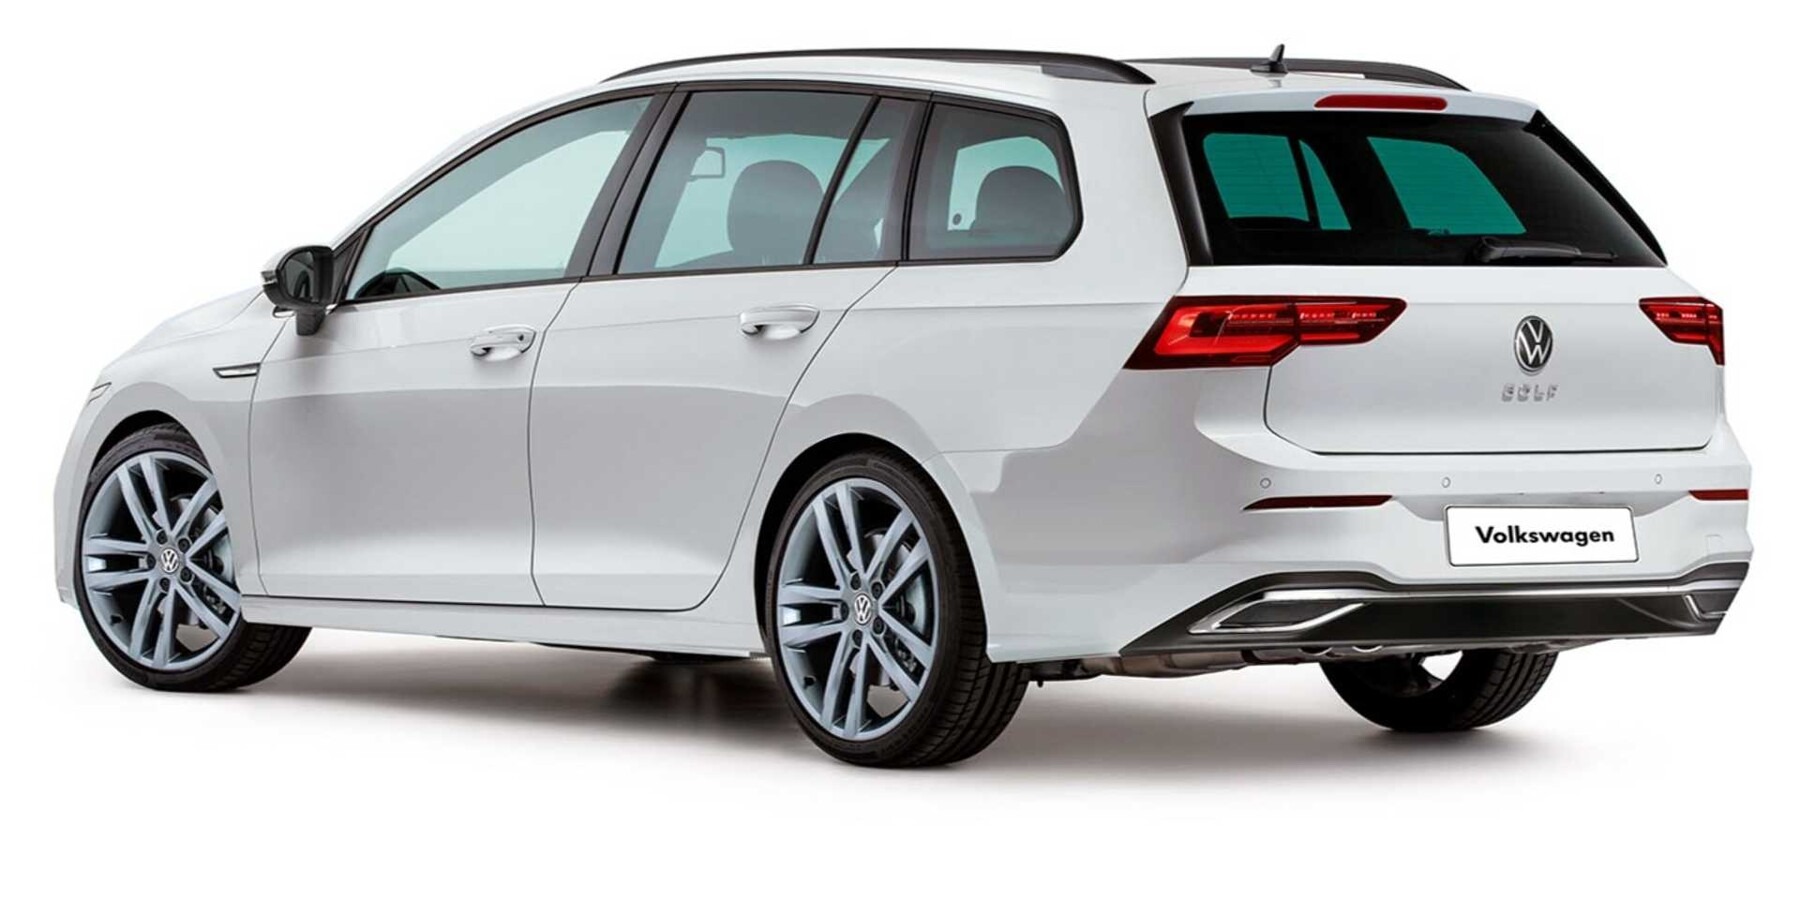 VW Golf 8 Variant (2020): So könnte er aussehen